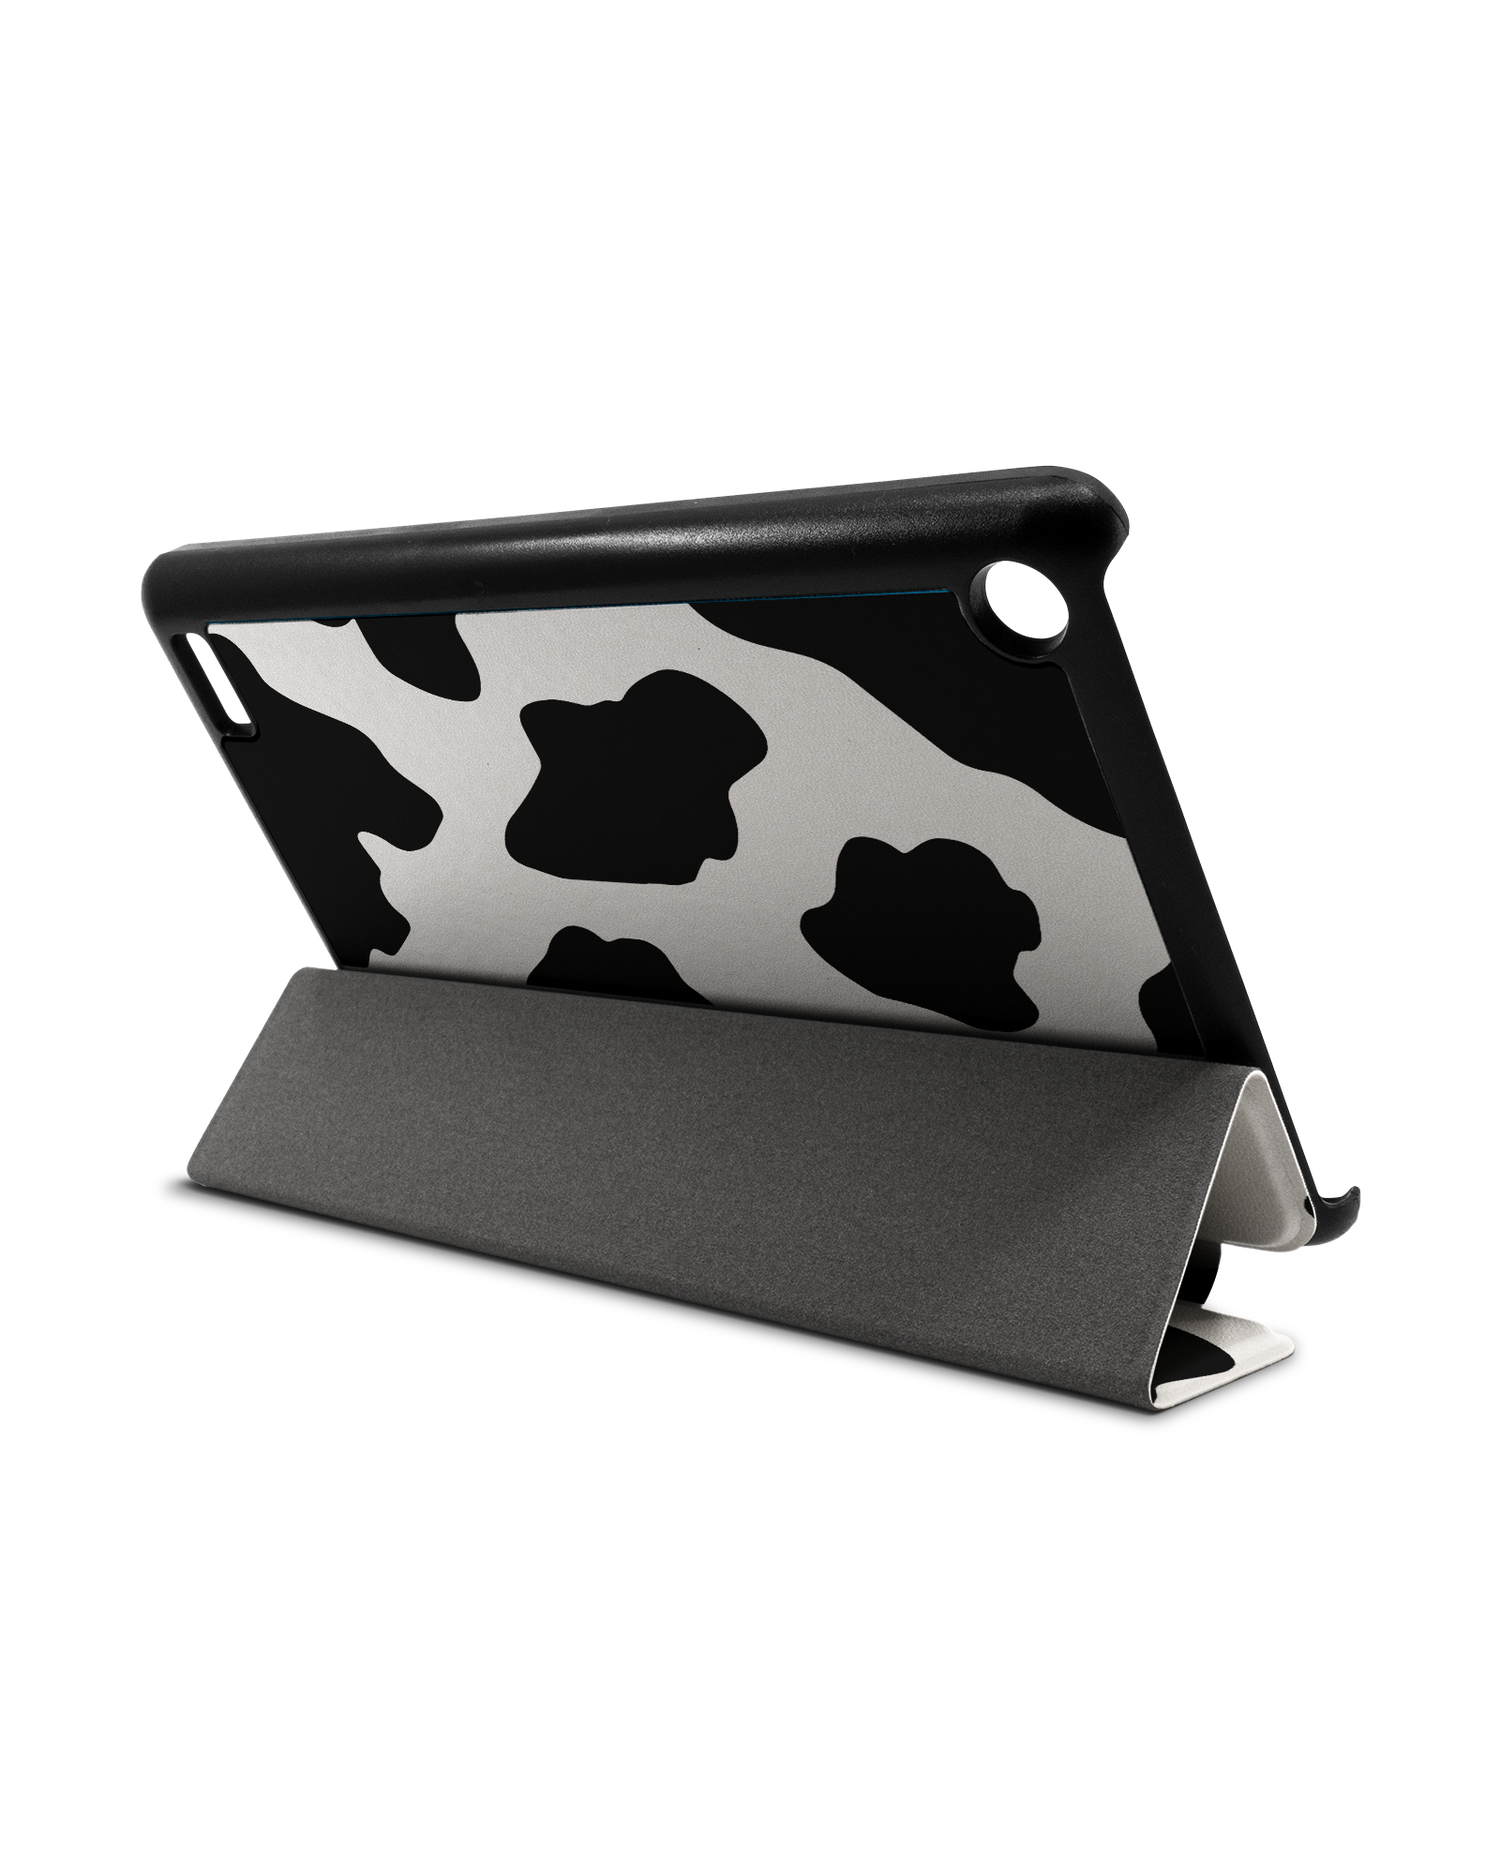 Cow Print 2 Tablet Smart Case für Amazon Fire 7: Aufgestellt im Querformat